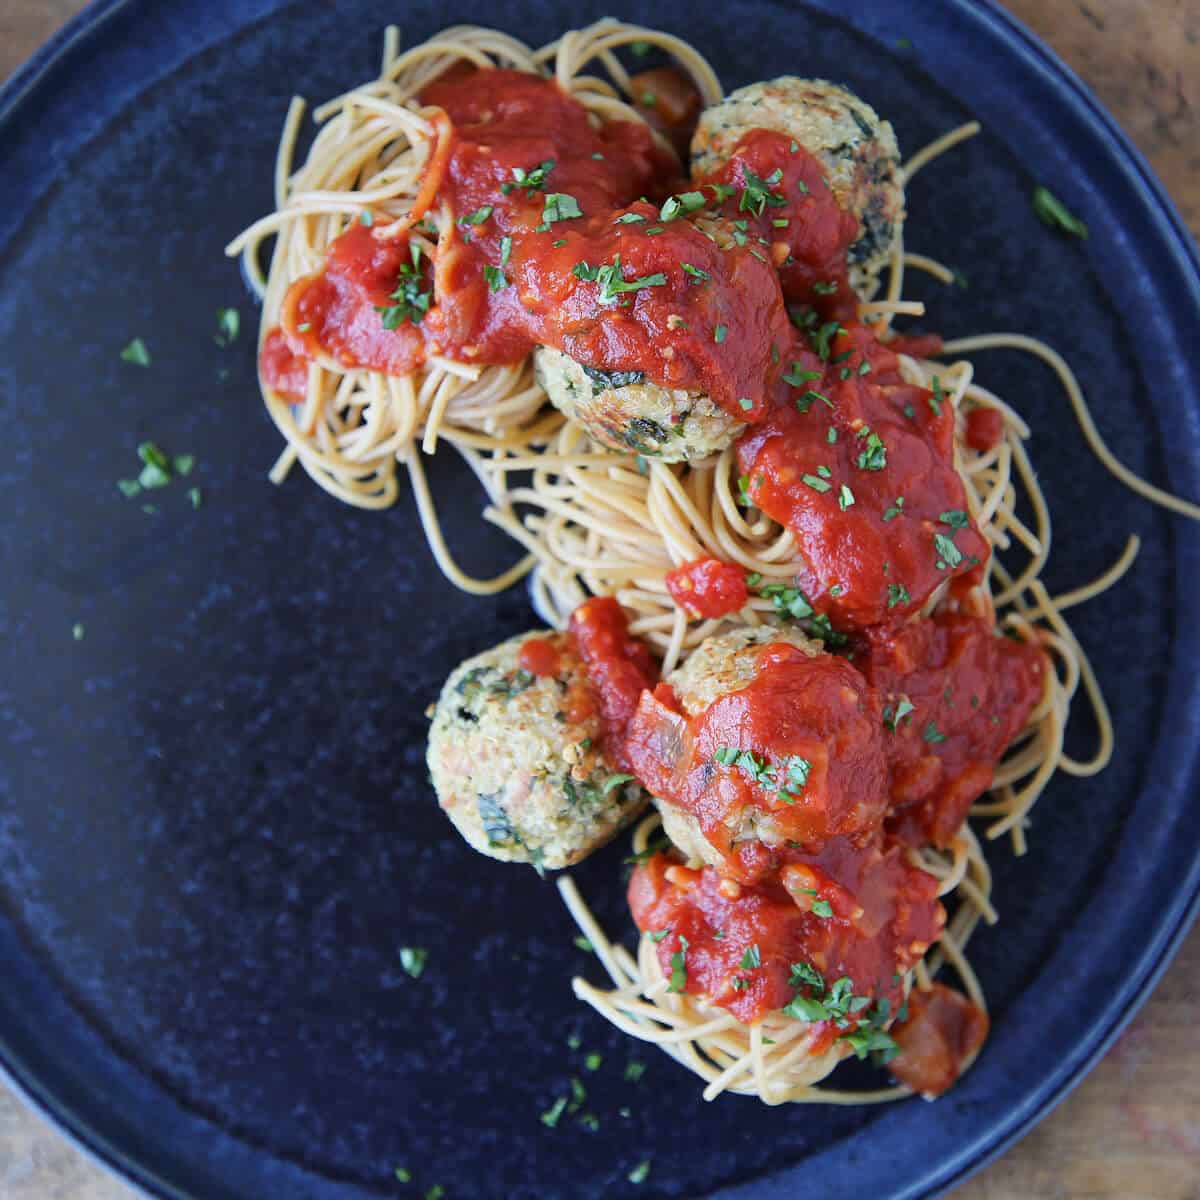 Herbivorous Italian dish in sauce on pasta